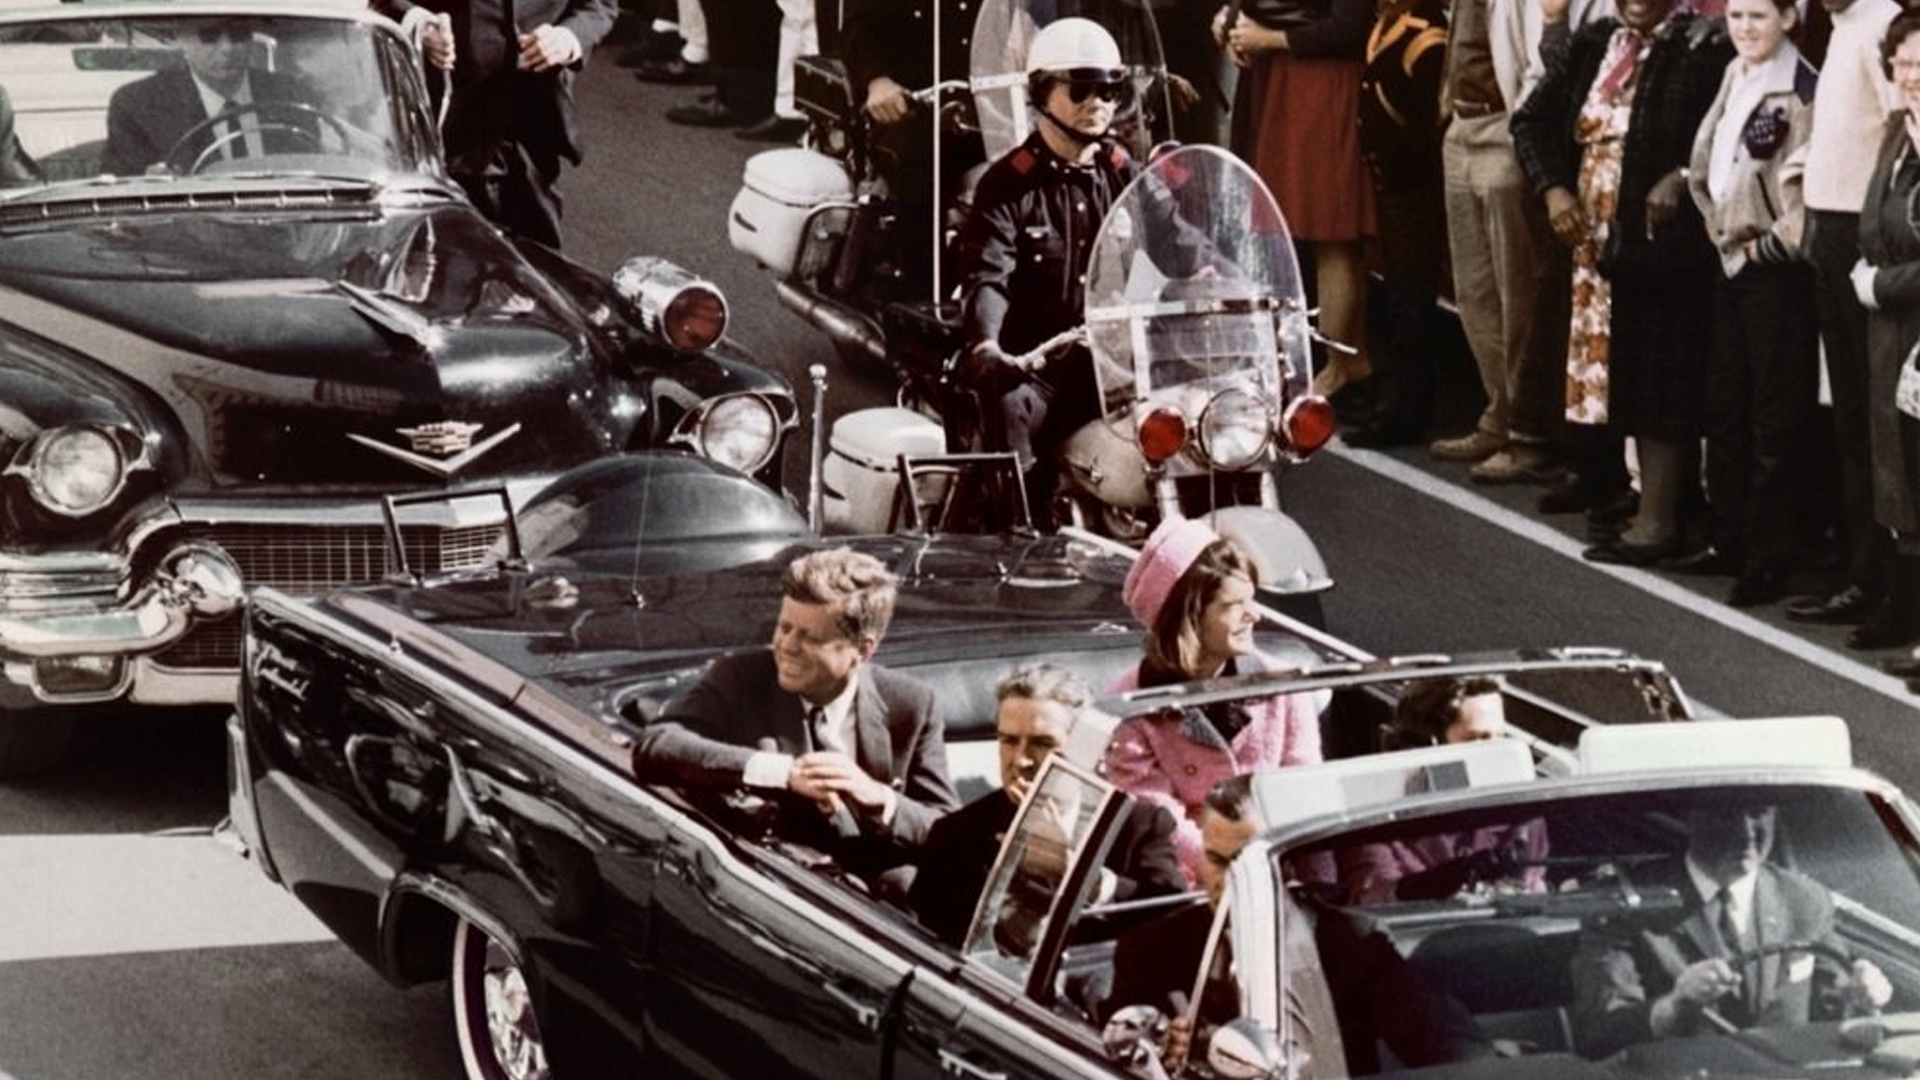 L’assassinio di John F. Kennedy